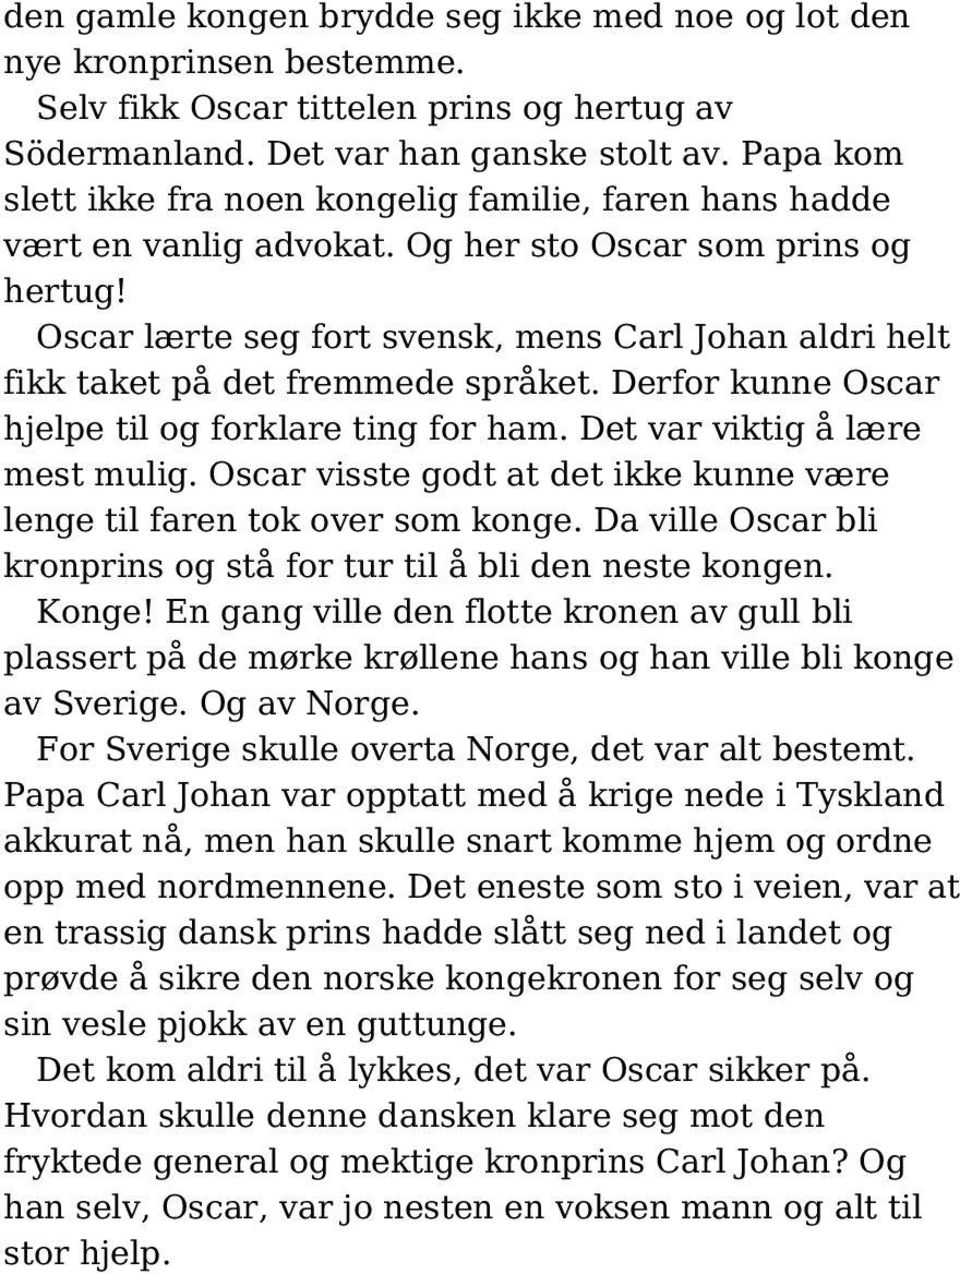 Oscar lærte seg fort svensk, mens Carl Johan aldri helt fikk taket på det fremmede språket. Derfor kunne Oscar hjelpe til og forklare ting for ham. Det var viktig å lære mest mulig.